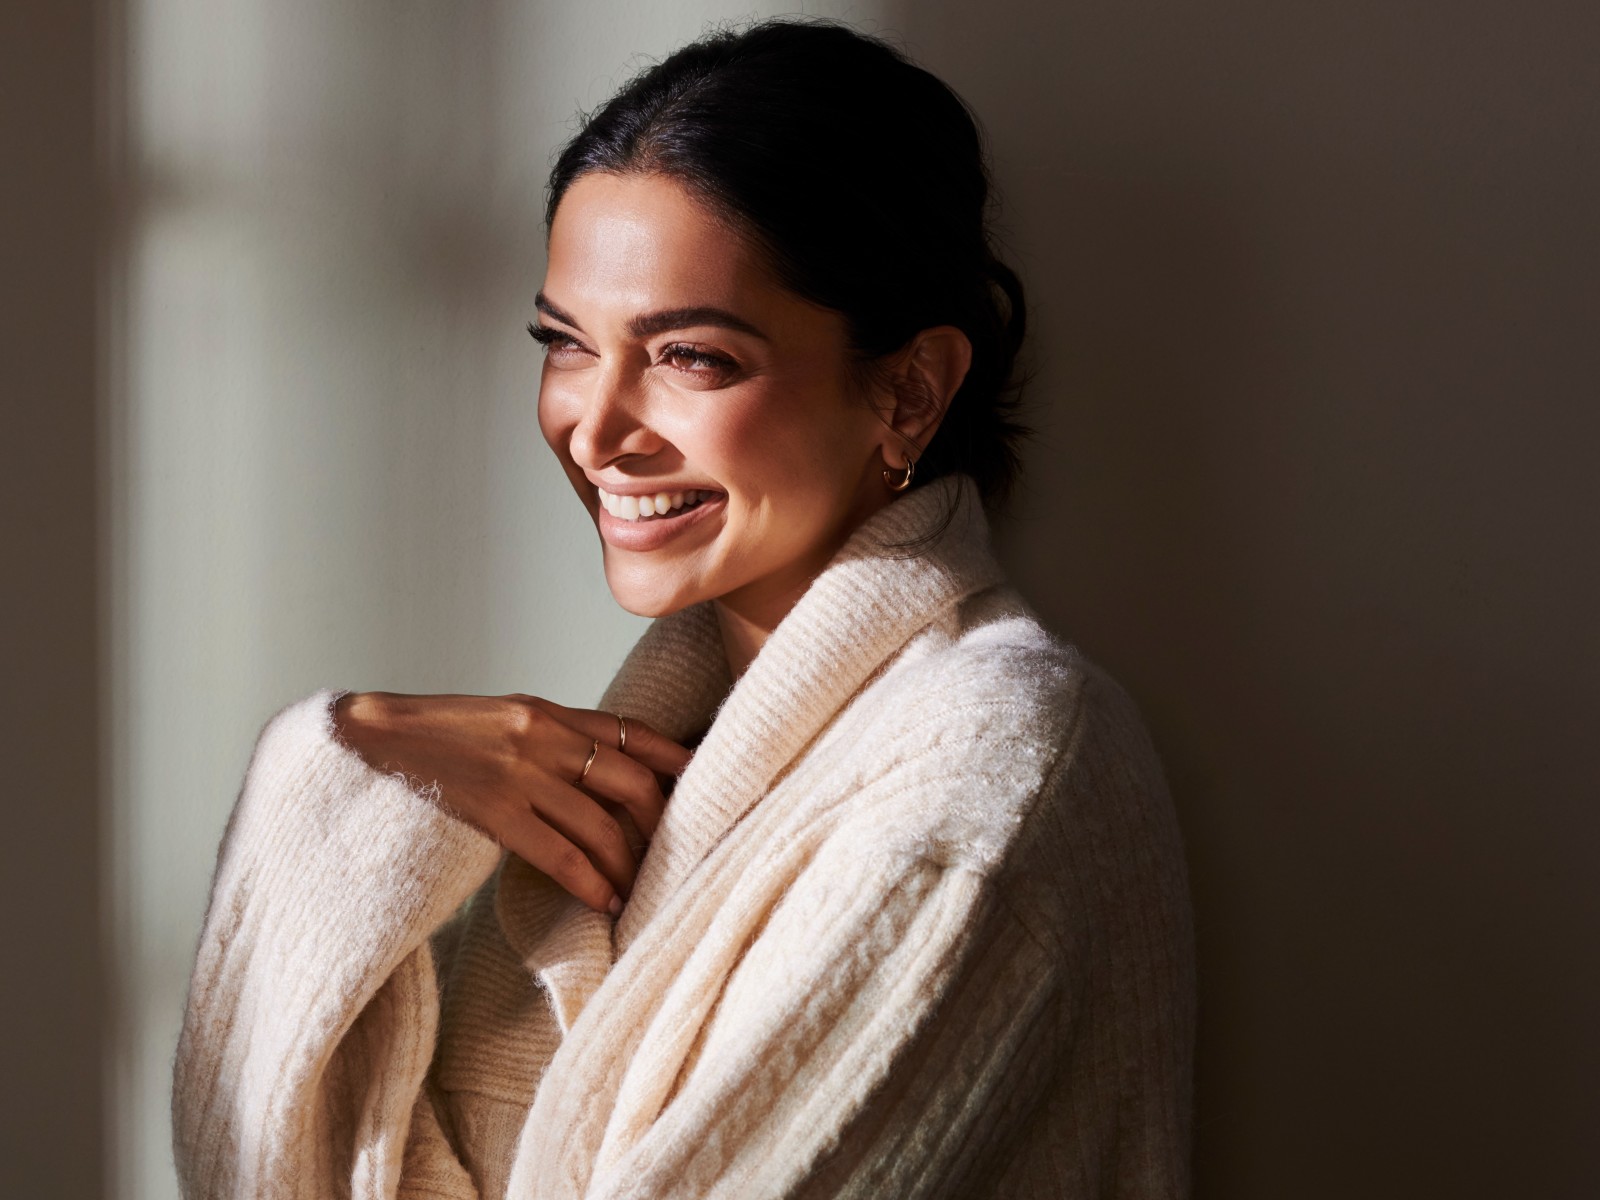 Louis Vuitton unveils Deepika Padukone as first Indian brand ambassador, Features